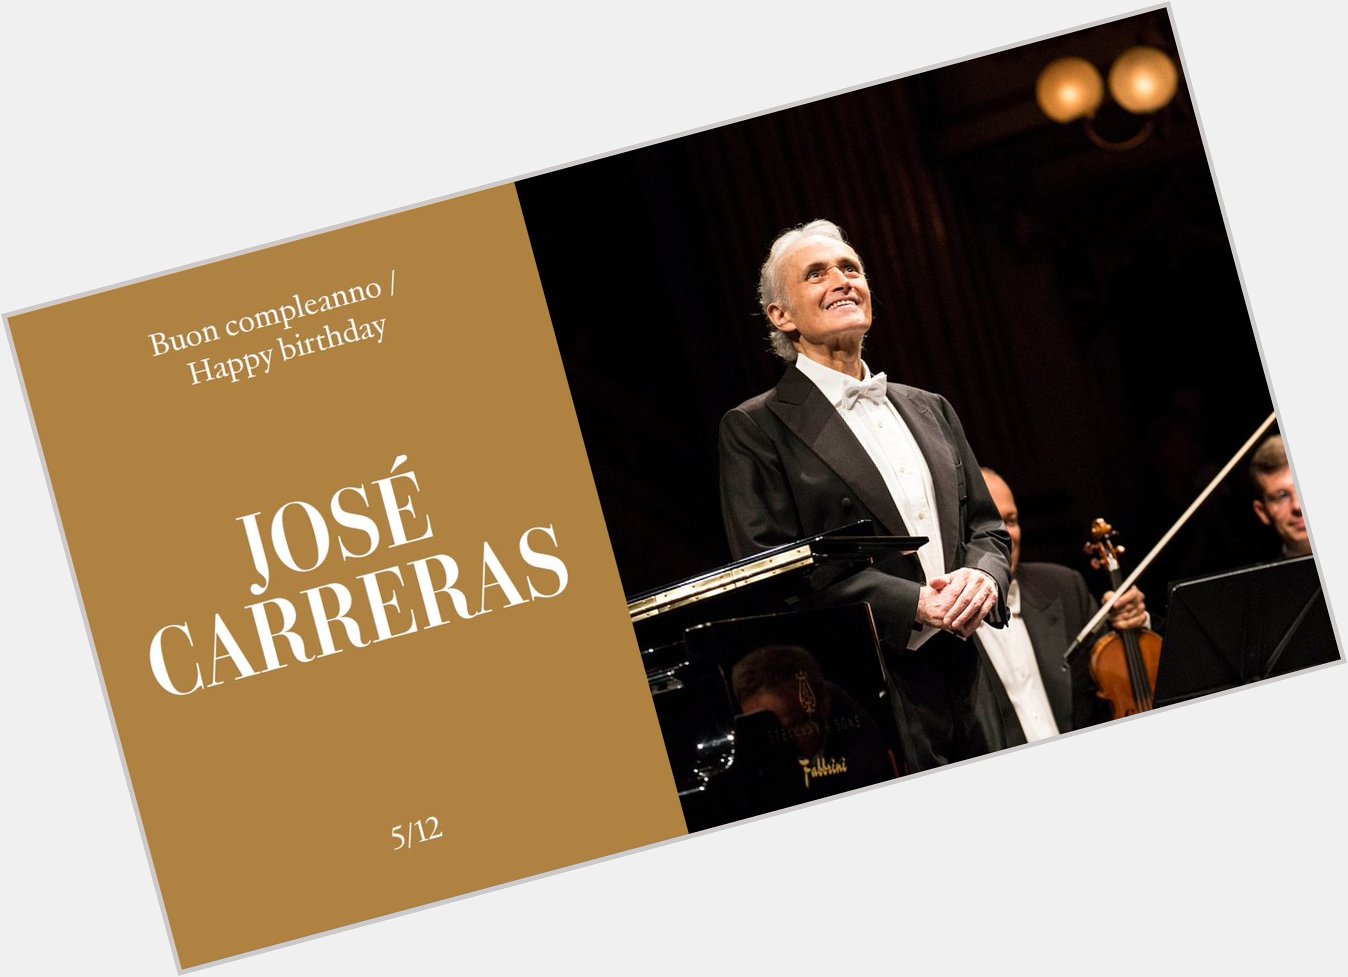 Buon compleanno / Happy birthday José Carreras 